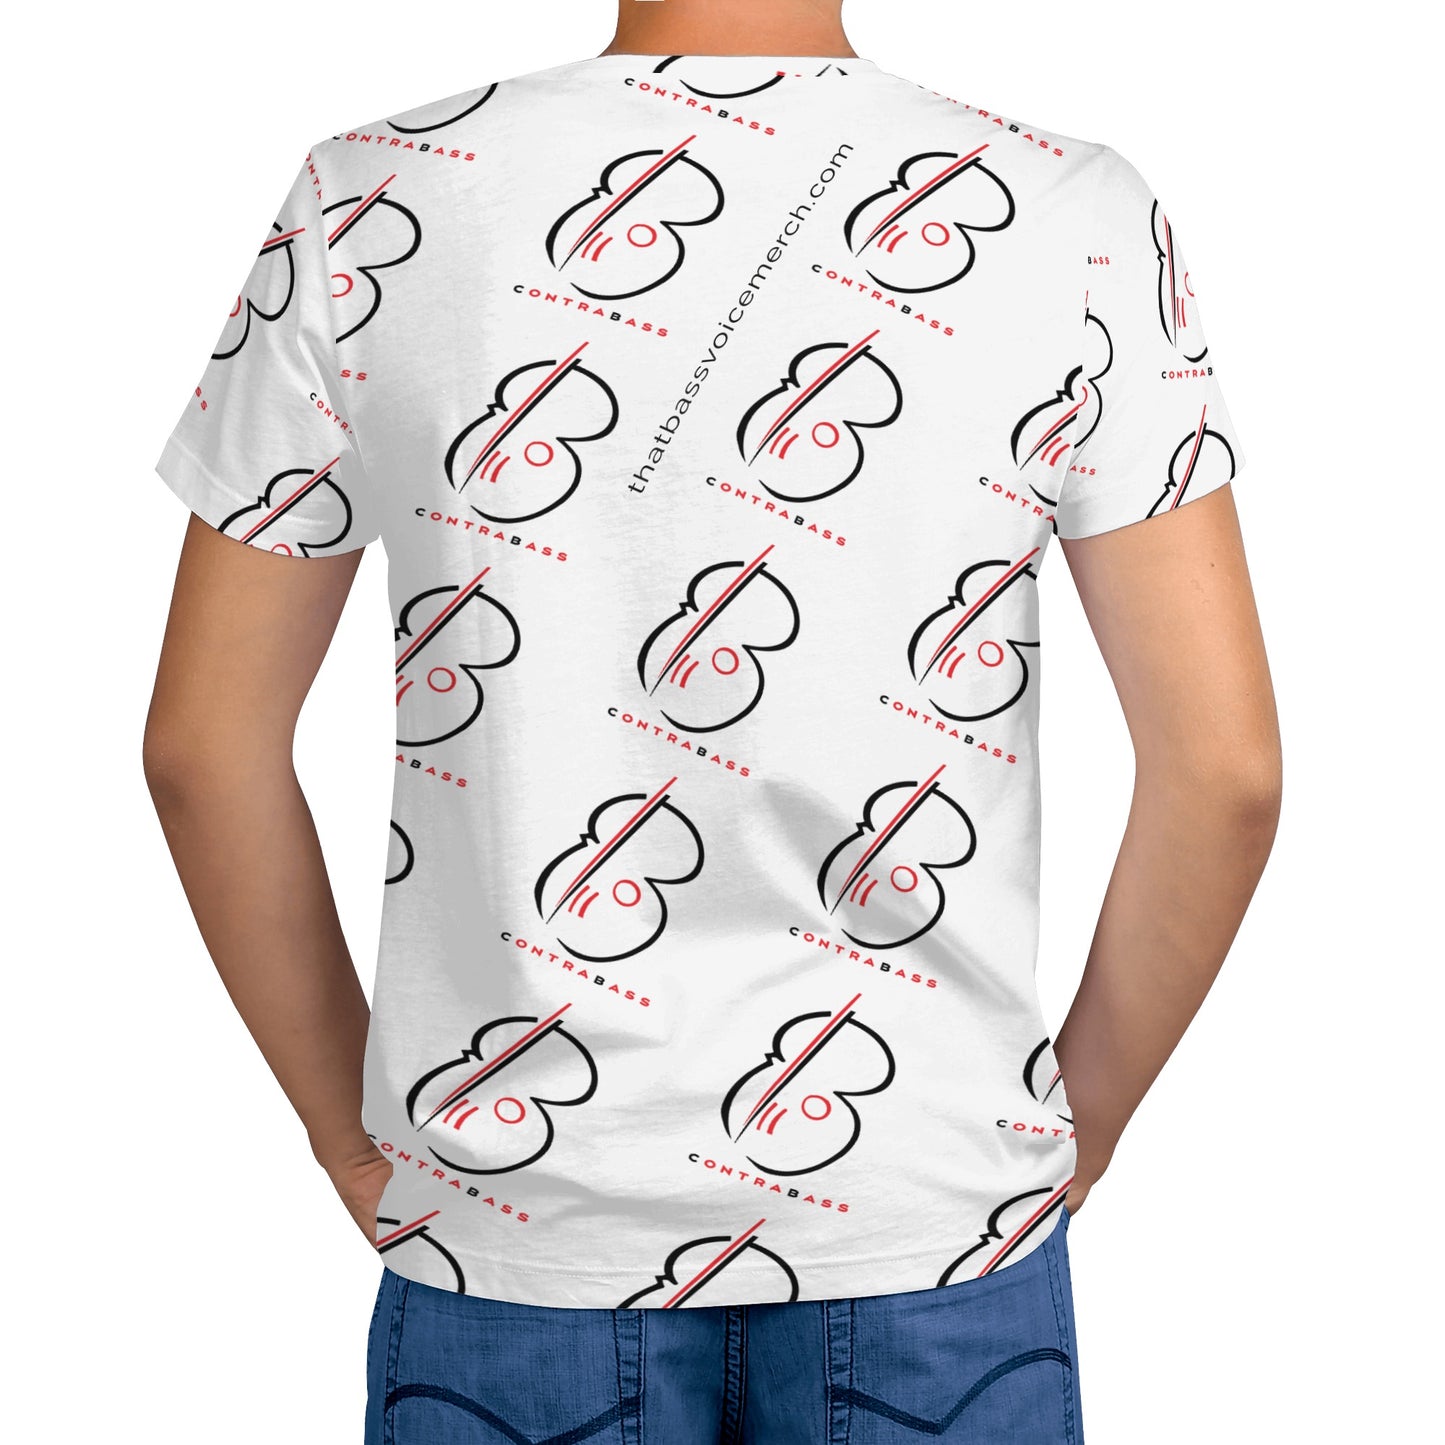 "ContraBASS" Men's All Over Print T-shirt